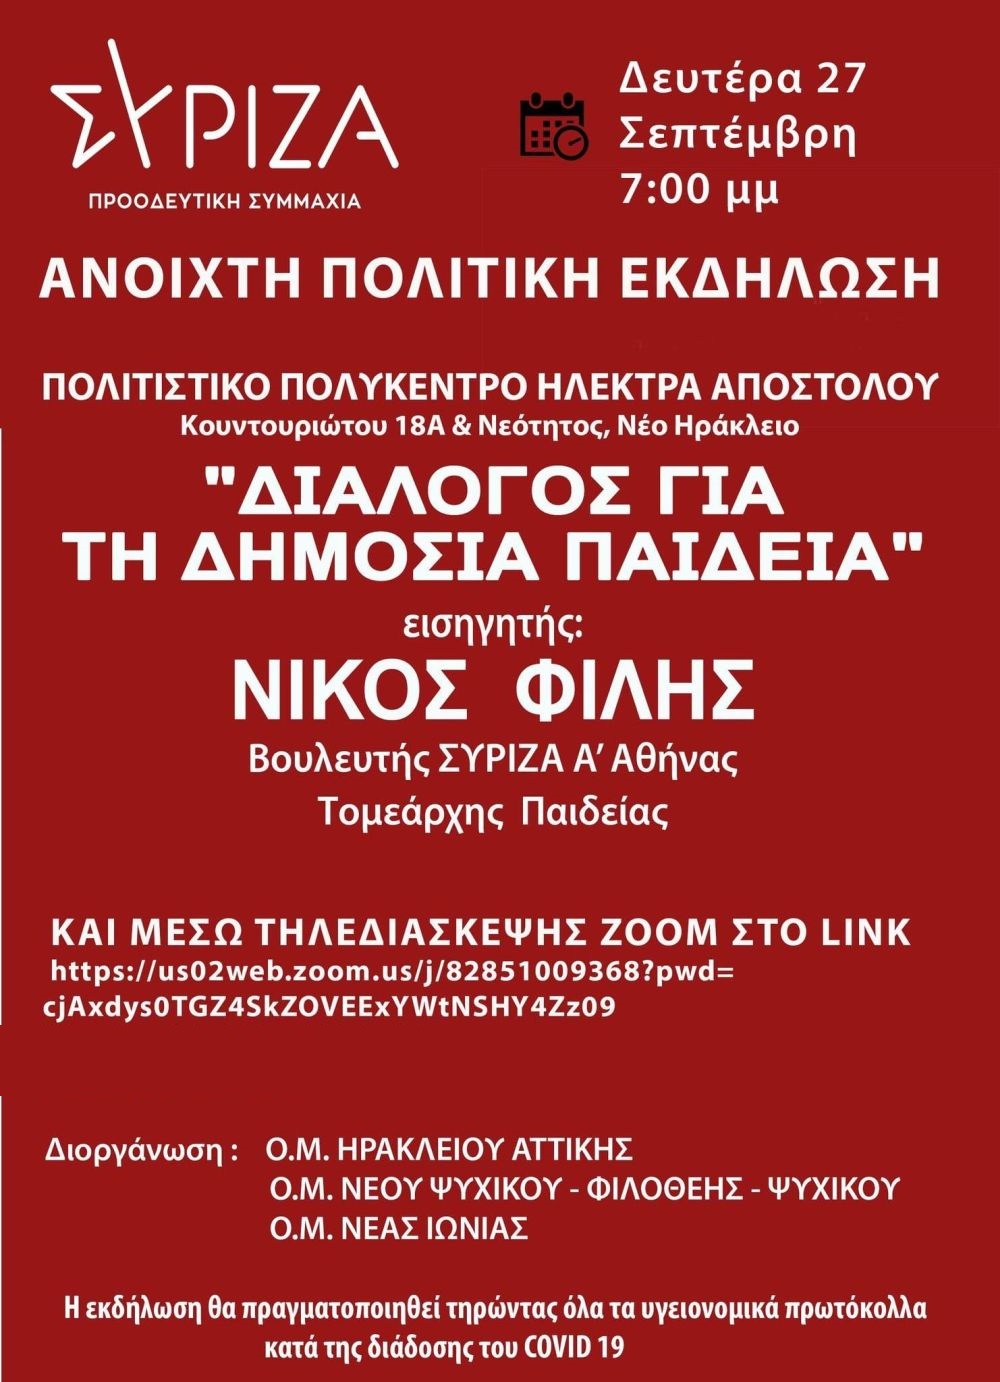 Εκδήλωση των Ο.Μ. ΣΥΡΙΖΑ-ΠΣ Ηρακλείου Αττικής, Νέου Ψυχικού-Φιλοθέης-Ψυχικού και Ν. Ιωνίας με ομιλητή το Ν. Φίλη για τη δημόσια παιδεία